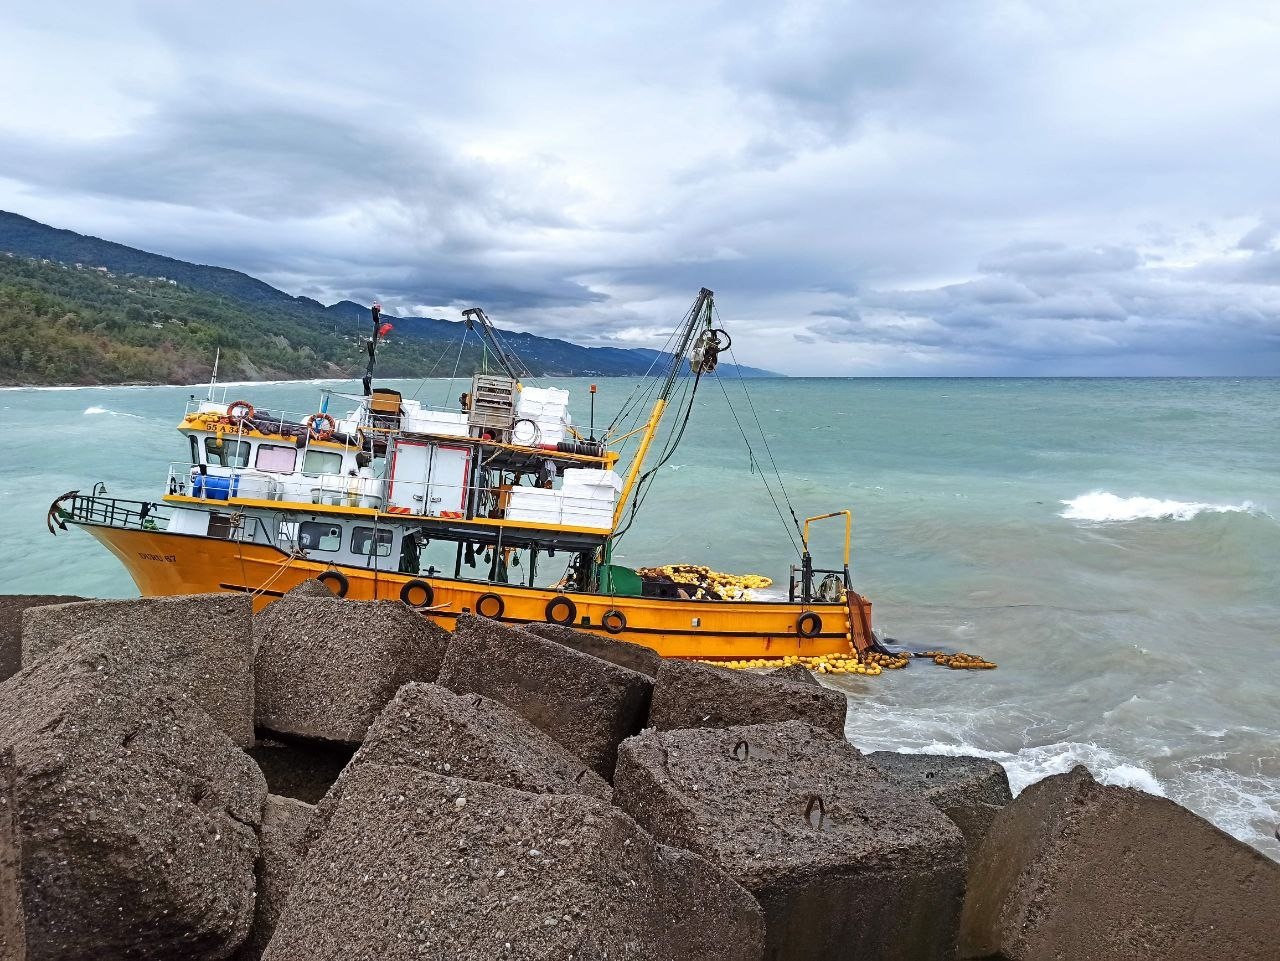 Samsun'dan Kastamonu açıklarına balık tutmak için giden tekne, kayalıklara çarptı, denize düşen balıkçılar son anda kurtuldu